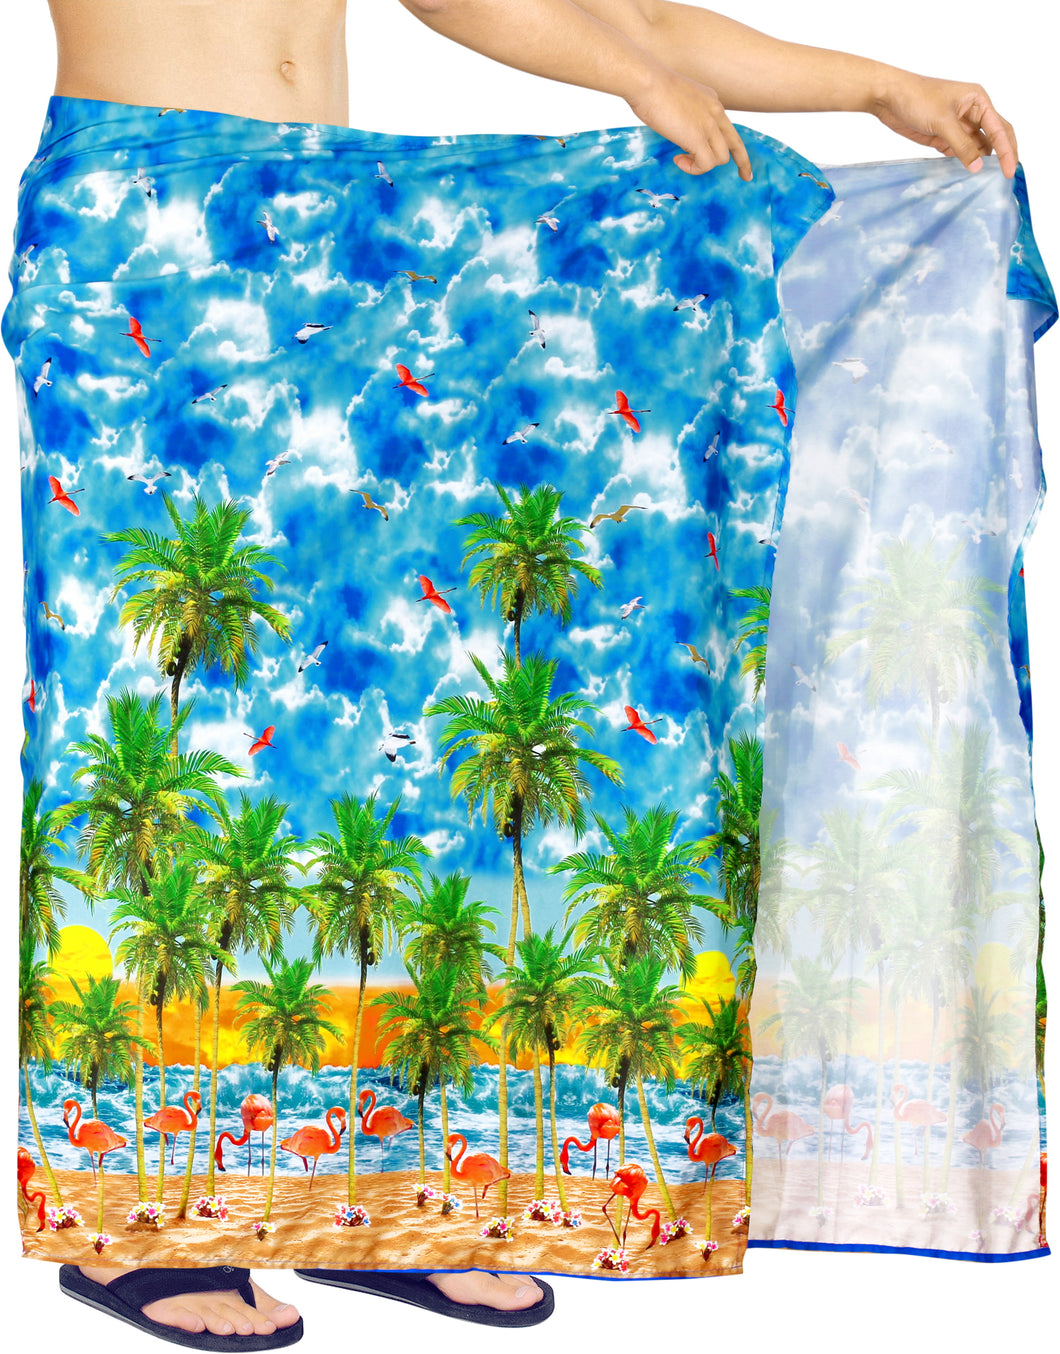 la-leela-Men's-Stylish-Bathing-Suit-Beach-Towel-Sarong-Wrap-One-Size-Blue_V952